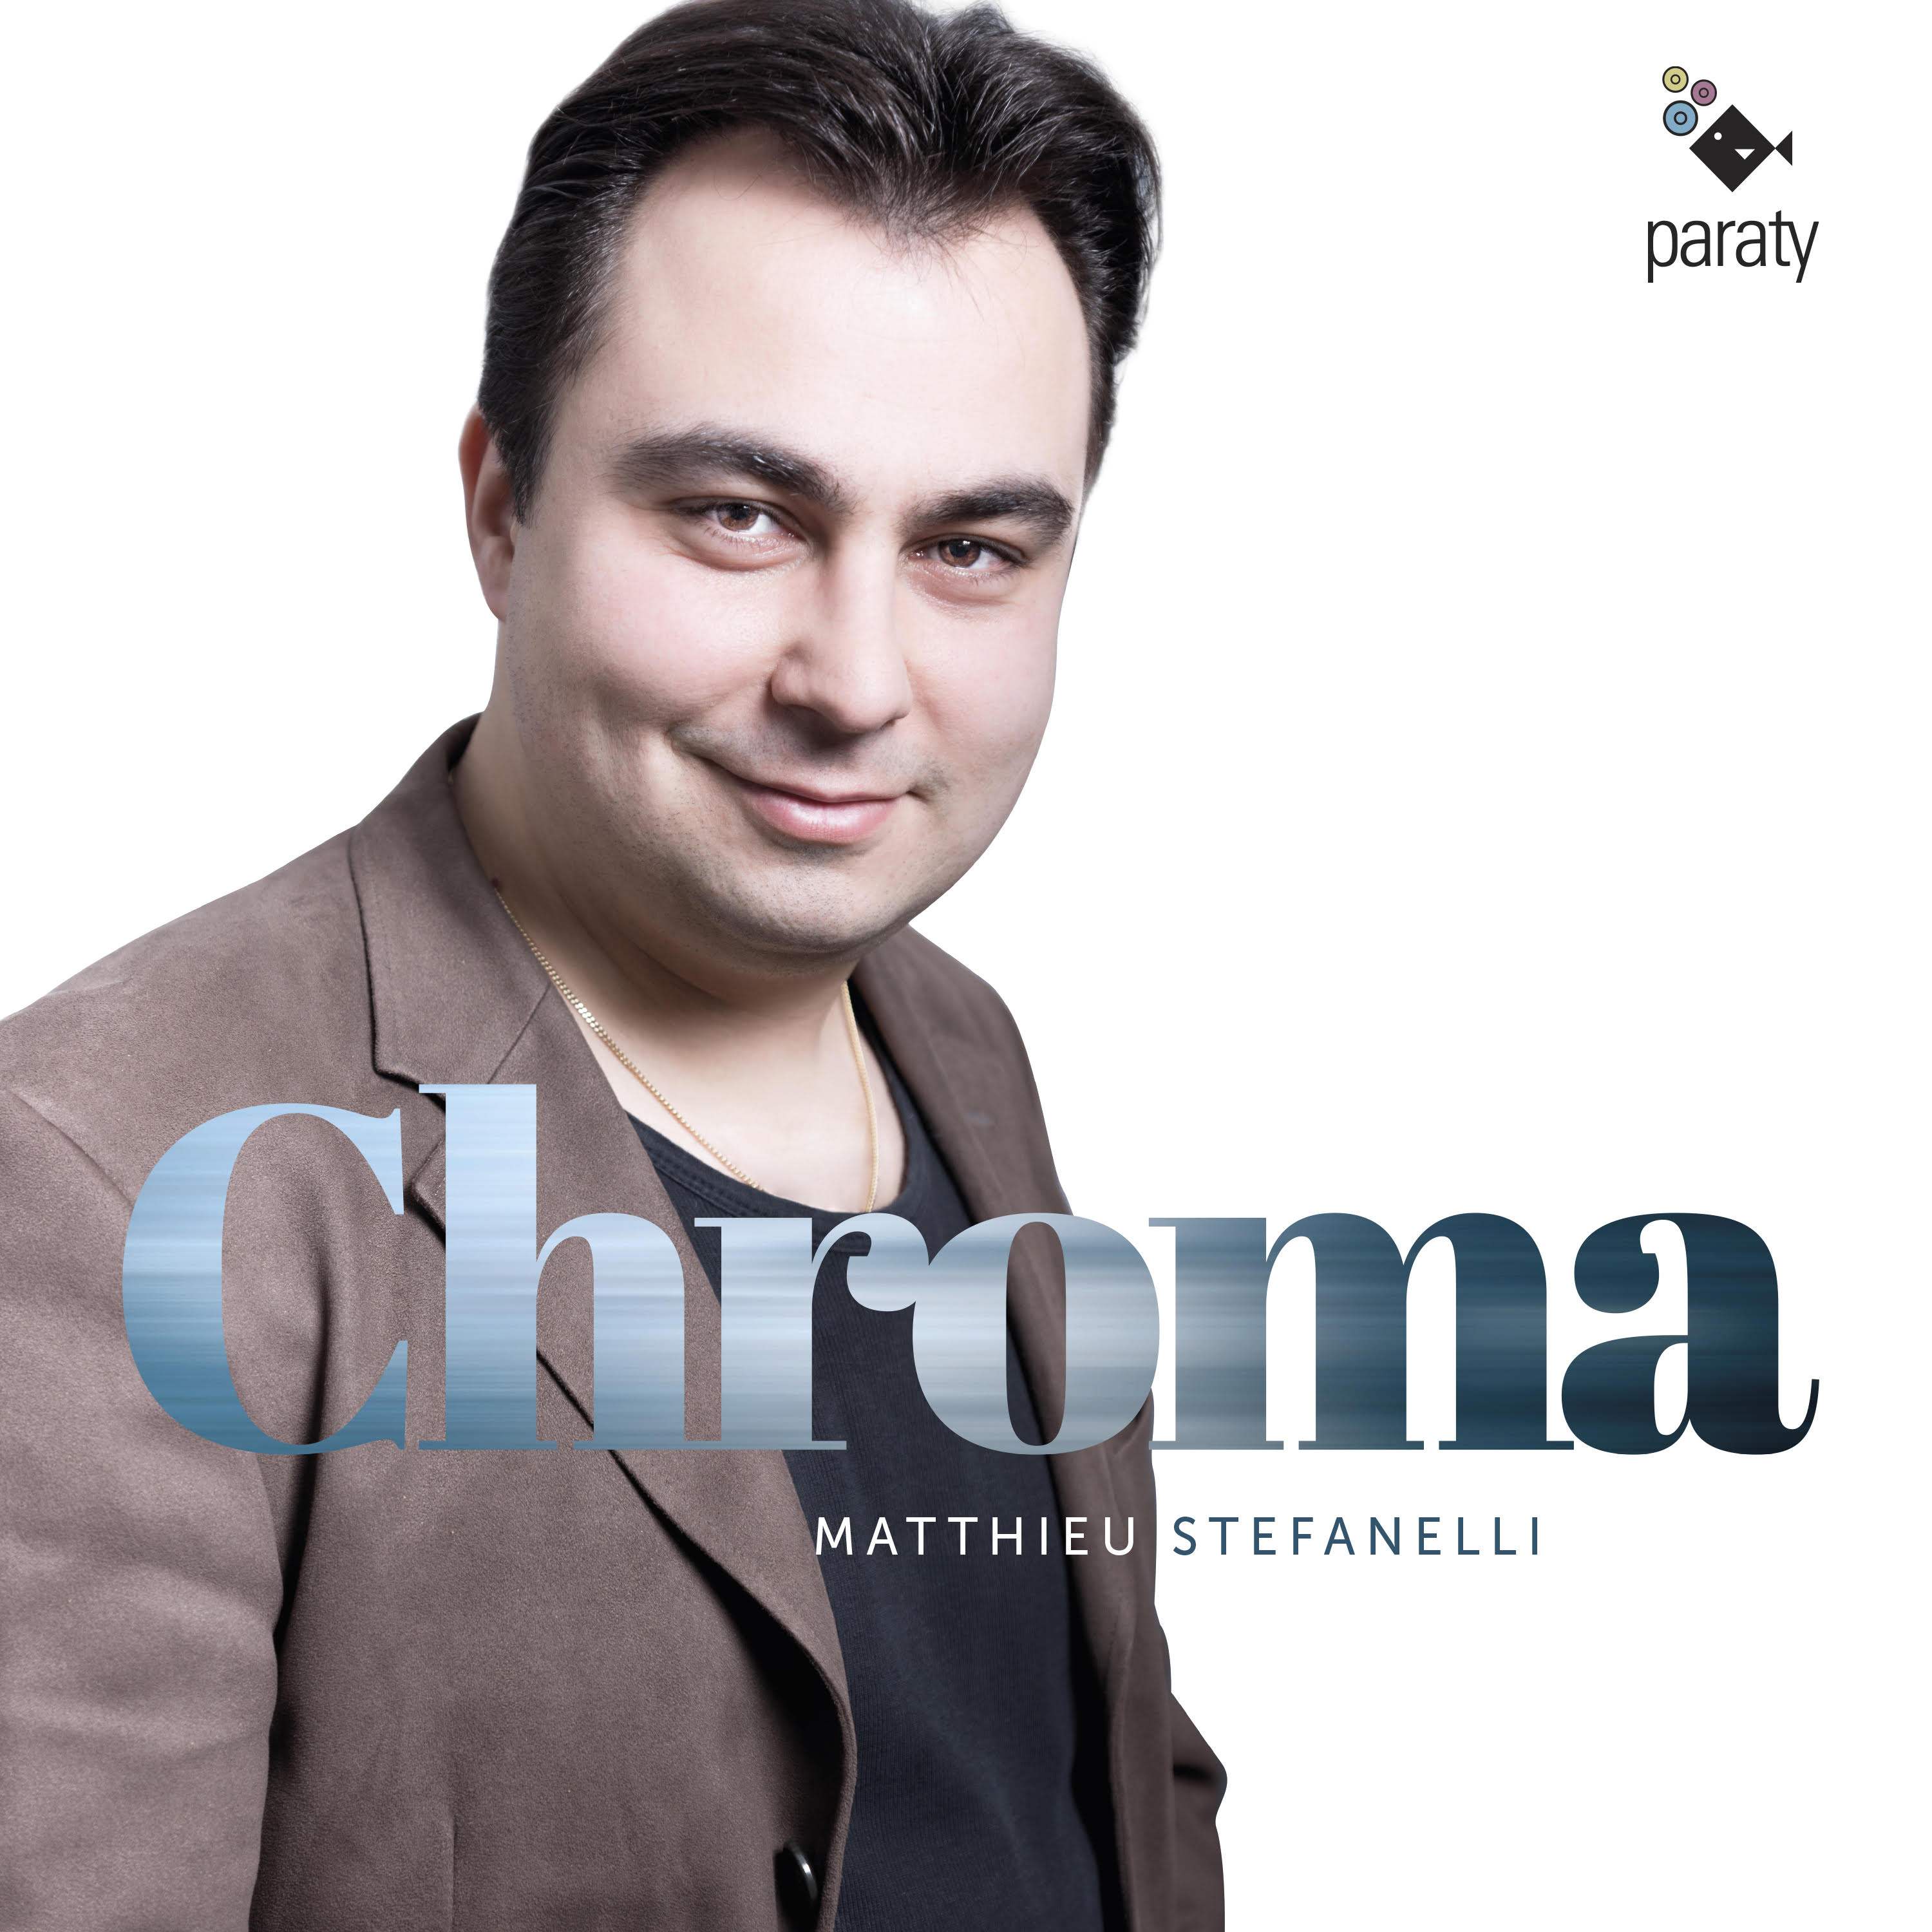 Chroma| Matthieu Stefanelli